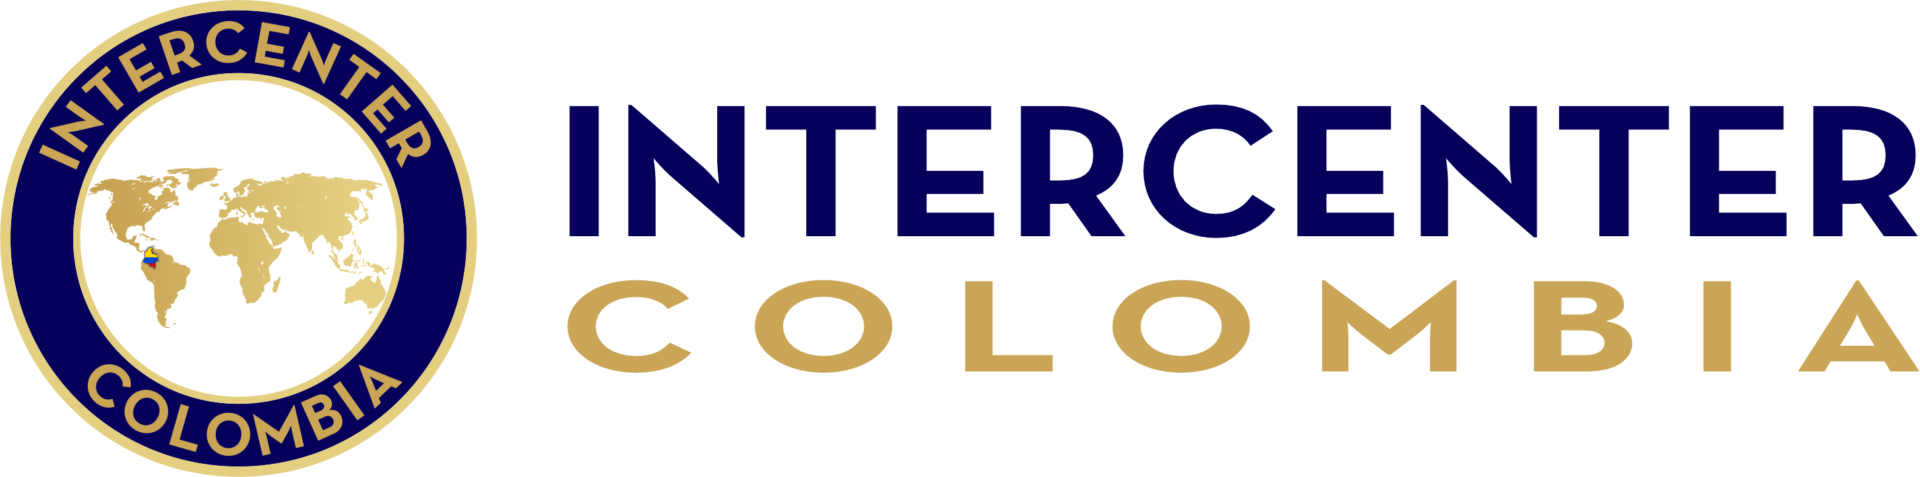 Intercenter Colombia